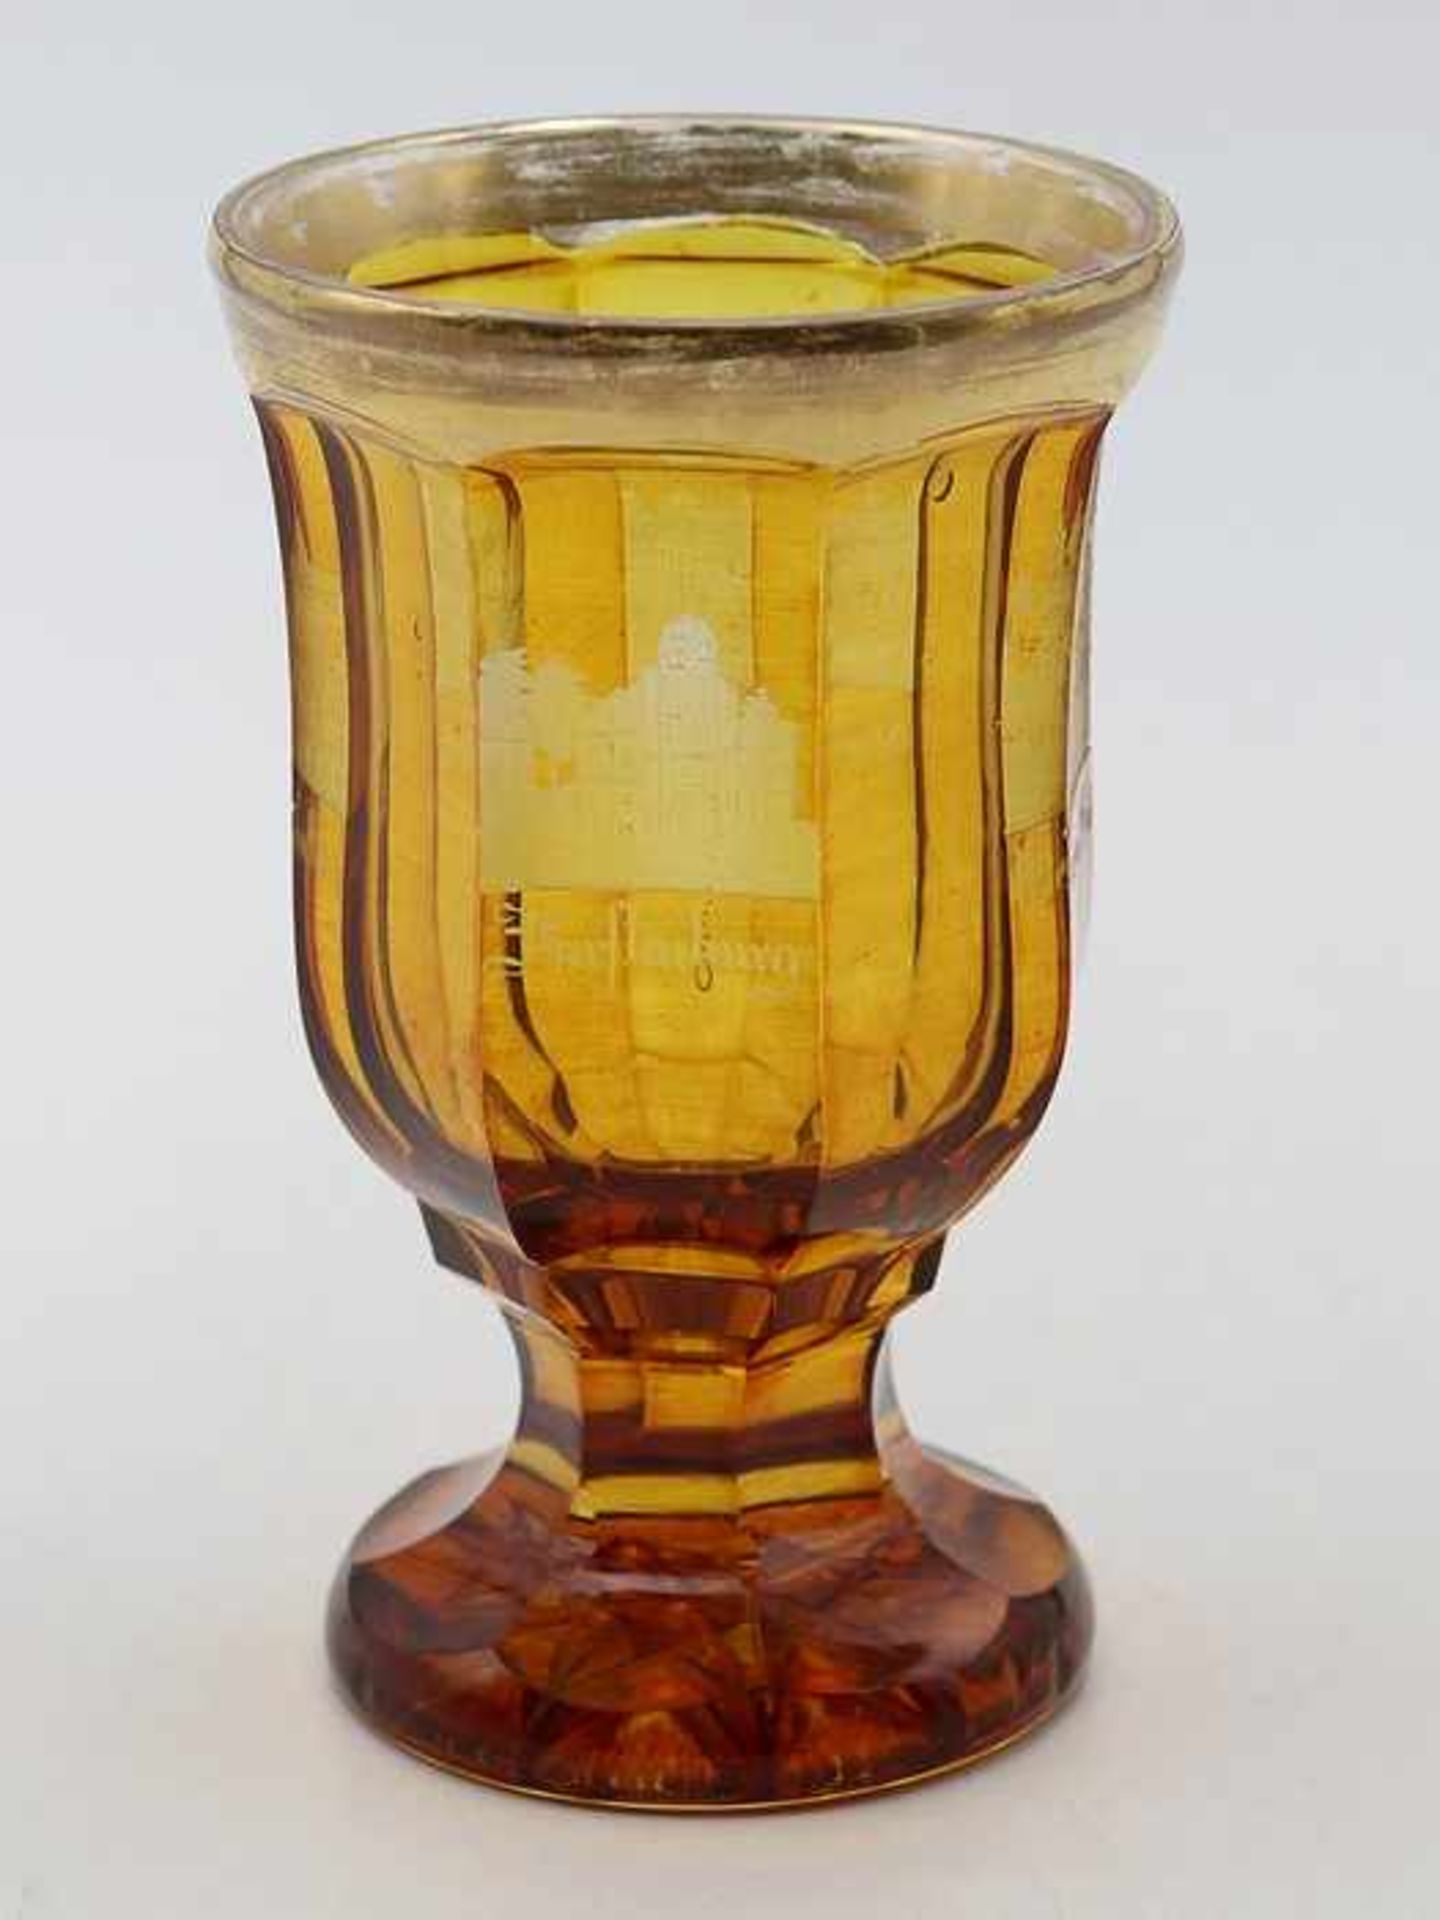 Bäderglas19. Jh., bernsteinfarbenes Glas, runder Stand m. aufwendigem Bodenstern, breiter fac.